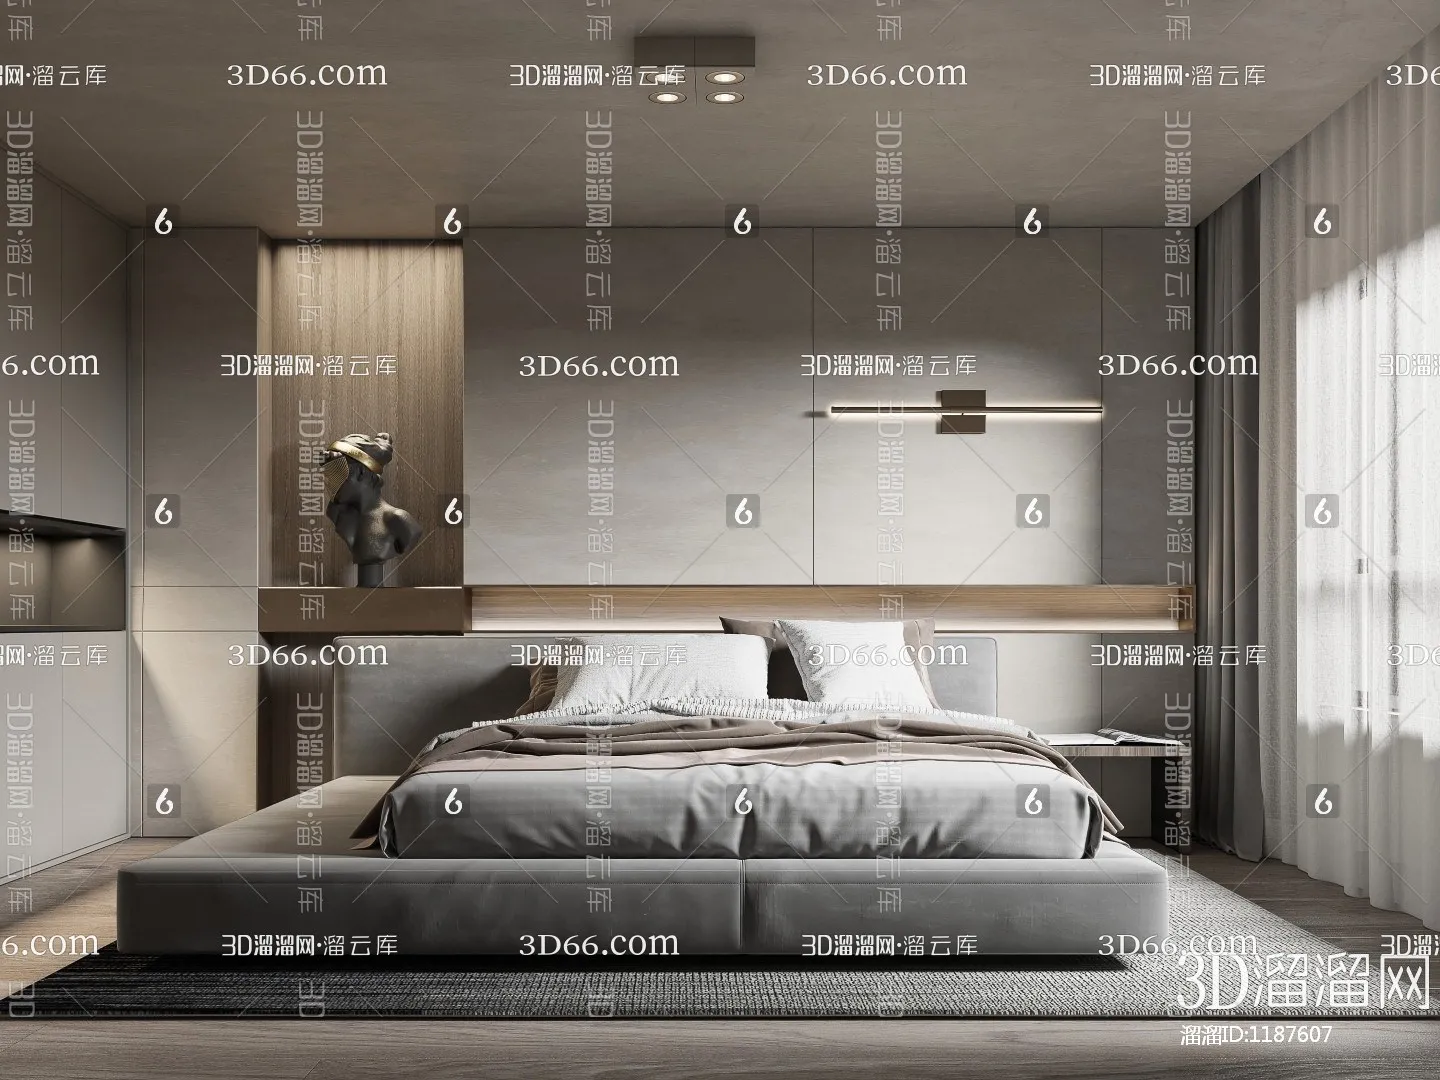 Bedroom 3D Scenes – 0196